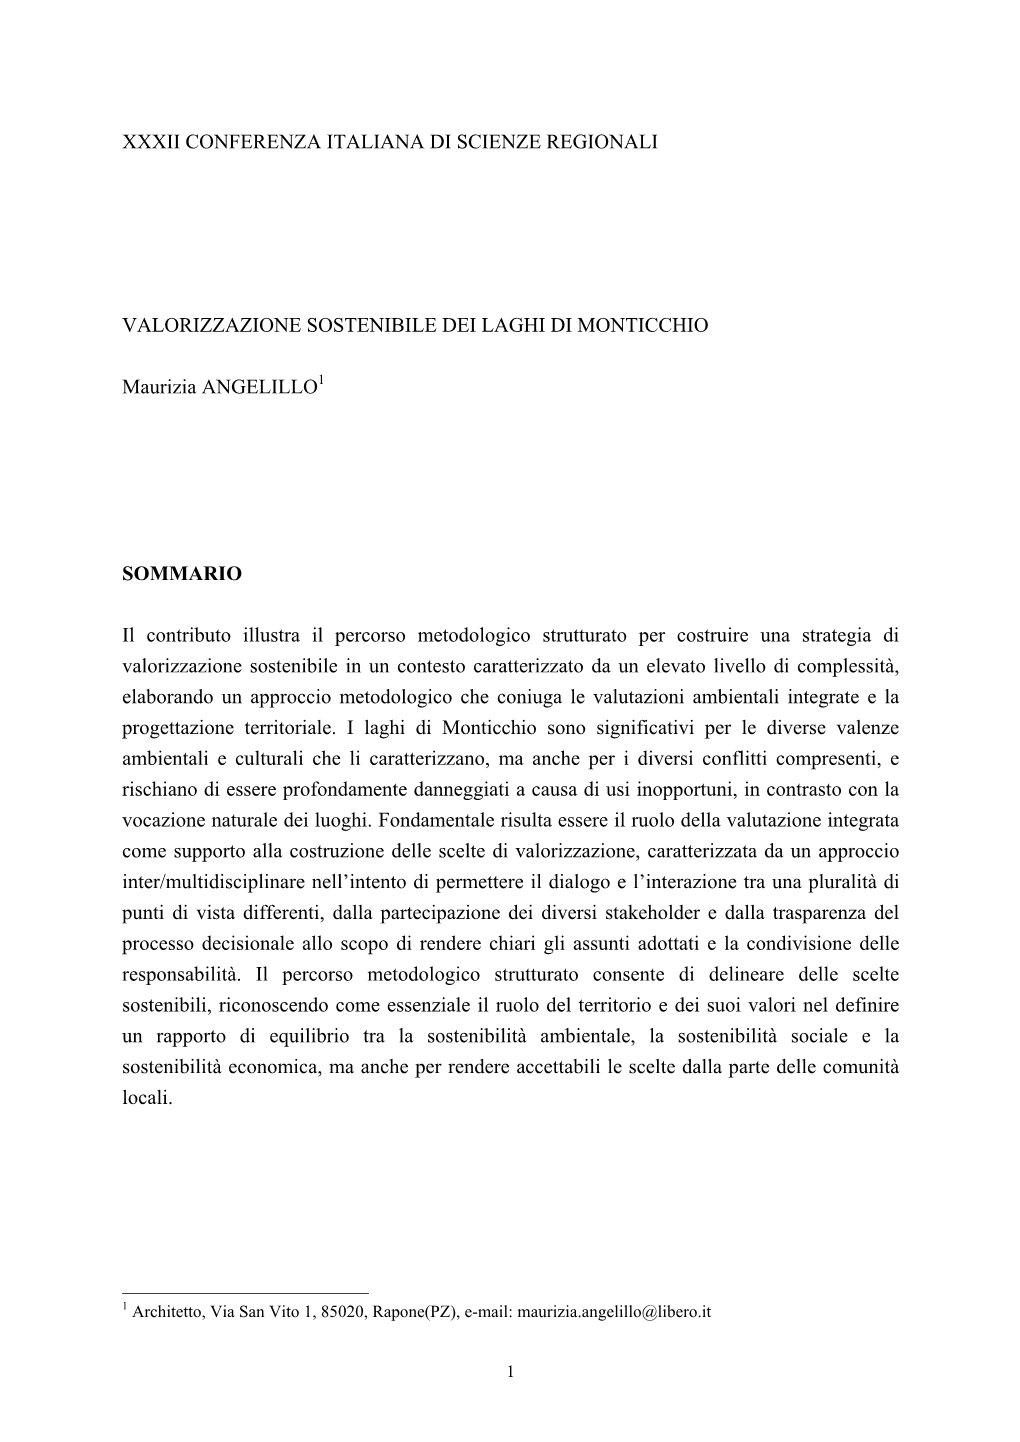 Angelillo Paper .Pdf